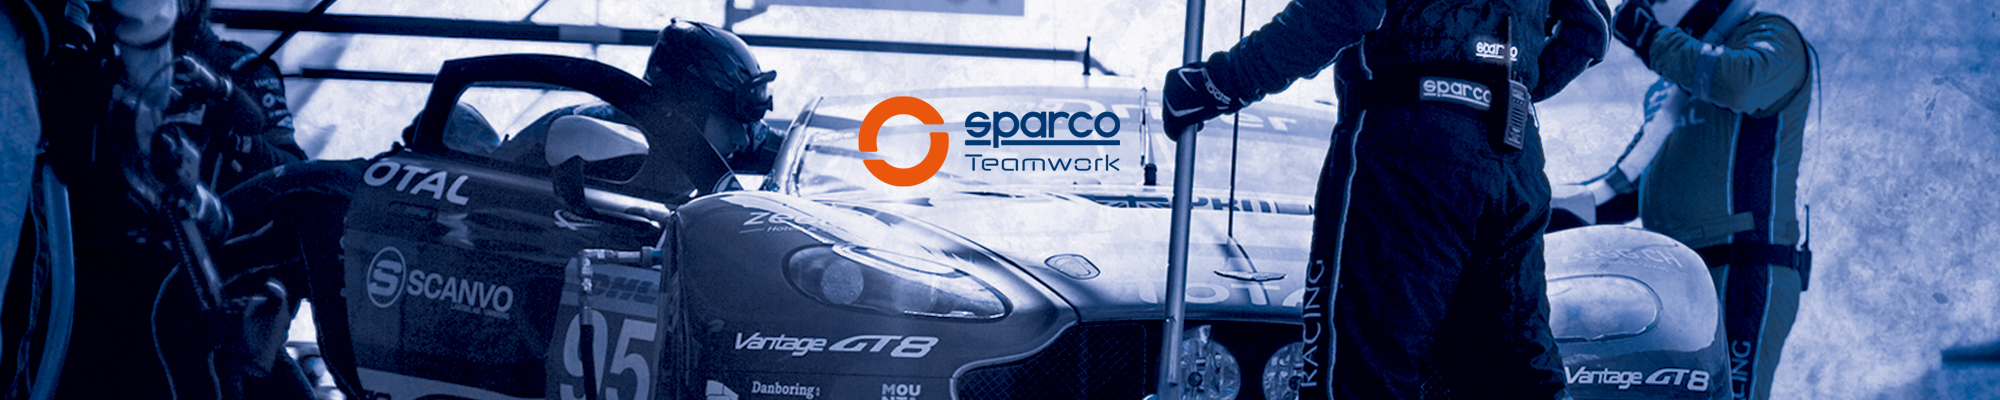 SPARCO Arbeitsschuhe und SPARCO Teamwork Sicherheitsschuhe